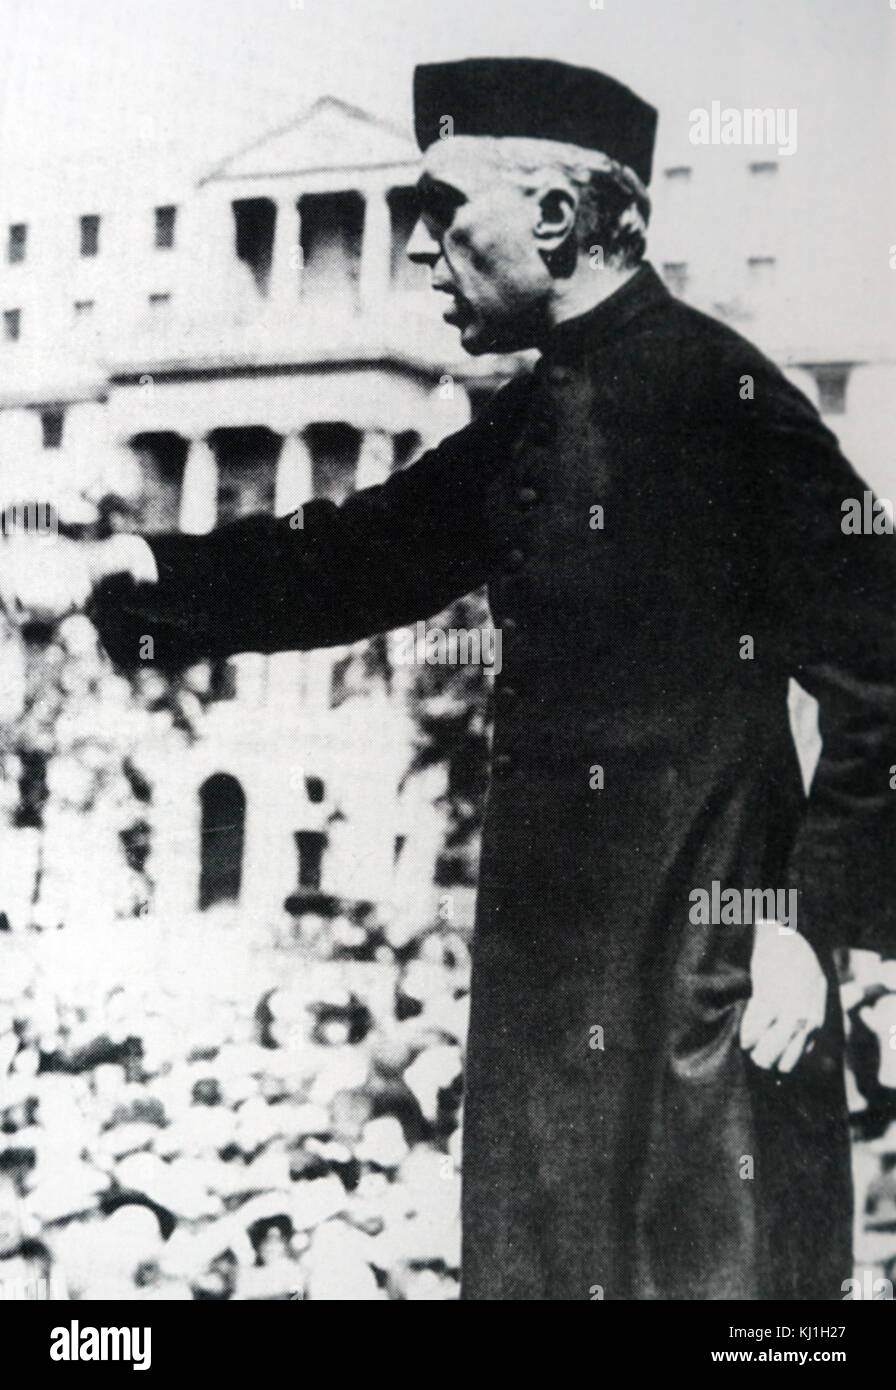 Jawaharlal Nehru (1889 - 1964) il futuro Primo Ministro dell'India e una figura centrale nella politica indiana prima e dopo l'indipendenza. Rivolgendosi a una folla di Londra 1936 Foto Stock